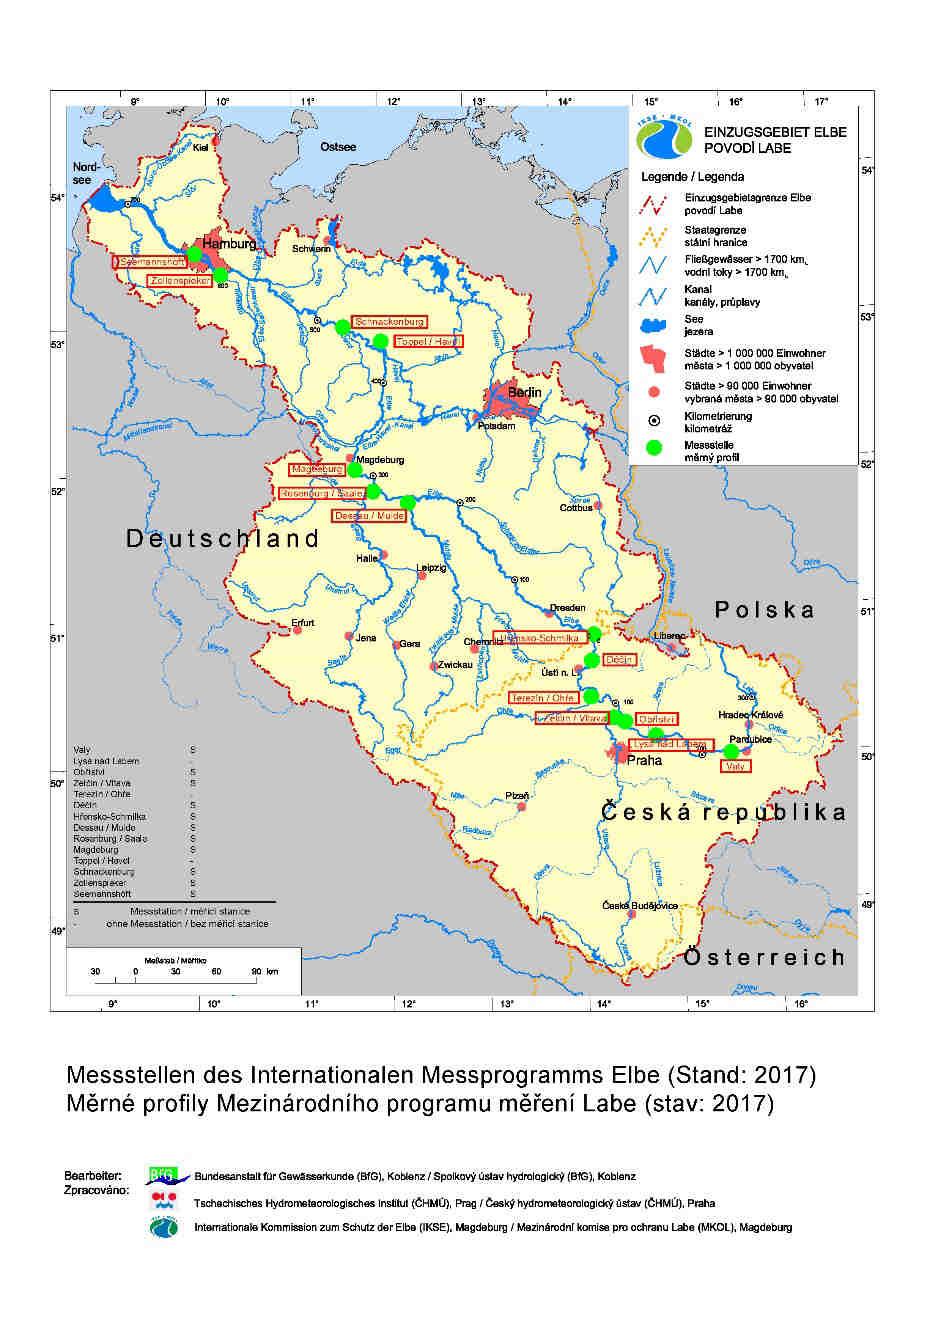 Internationales Messprogramm Elbe 1992 das erste international abgestimmte Messprogramm 2017 14 Messstellen (8x D, 6x CZ) 9x Elbe, 5x Nebenflüsse über 100 physikalische, chemische und